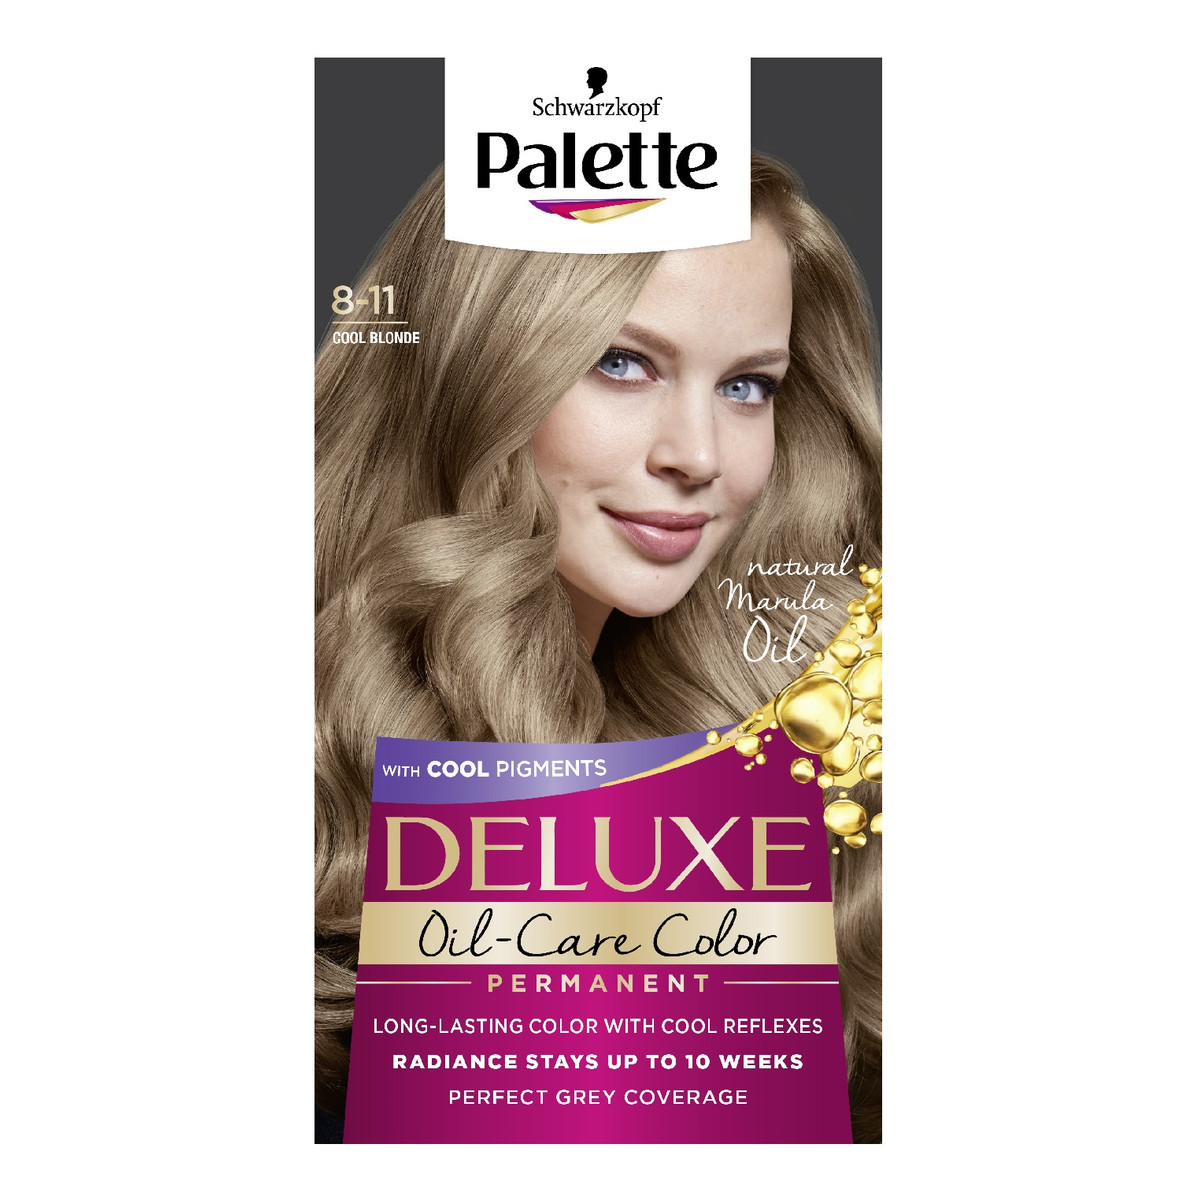 Palette Deluxe oil-care color farba do włosów trwale koloryzująca z mikroolejkami 8-11 chłodny blond